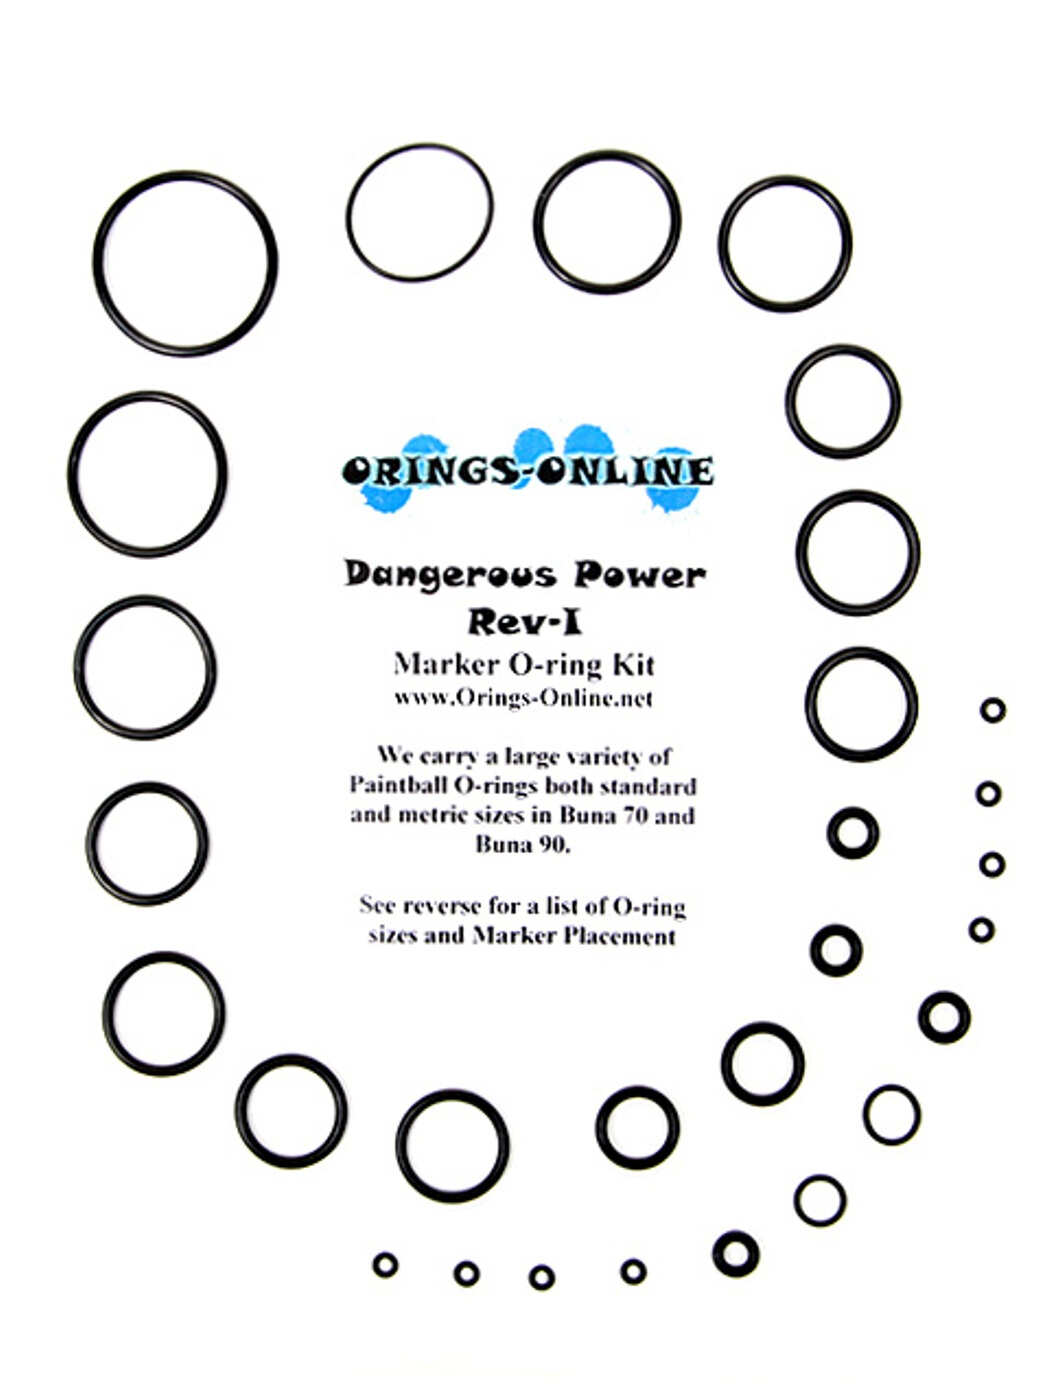 Dangerous Power Rev-I Marker O-ring Kit